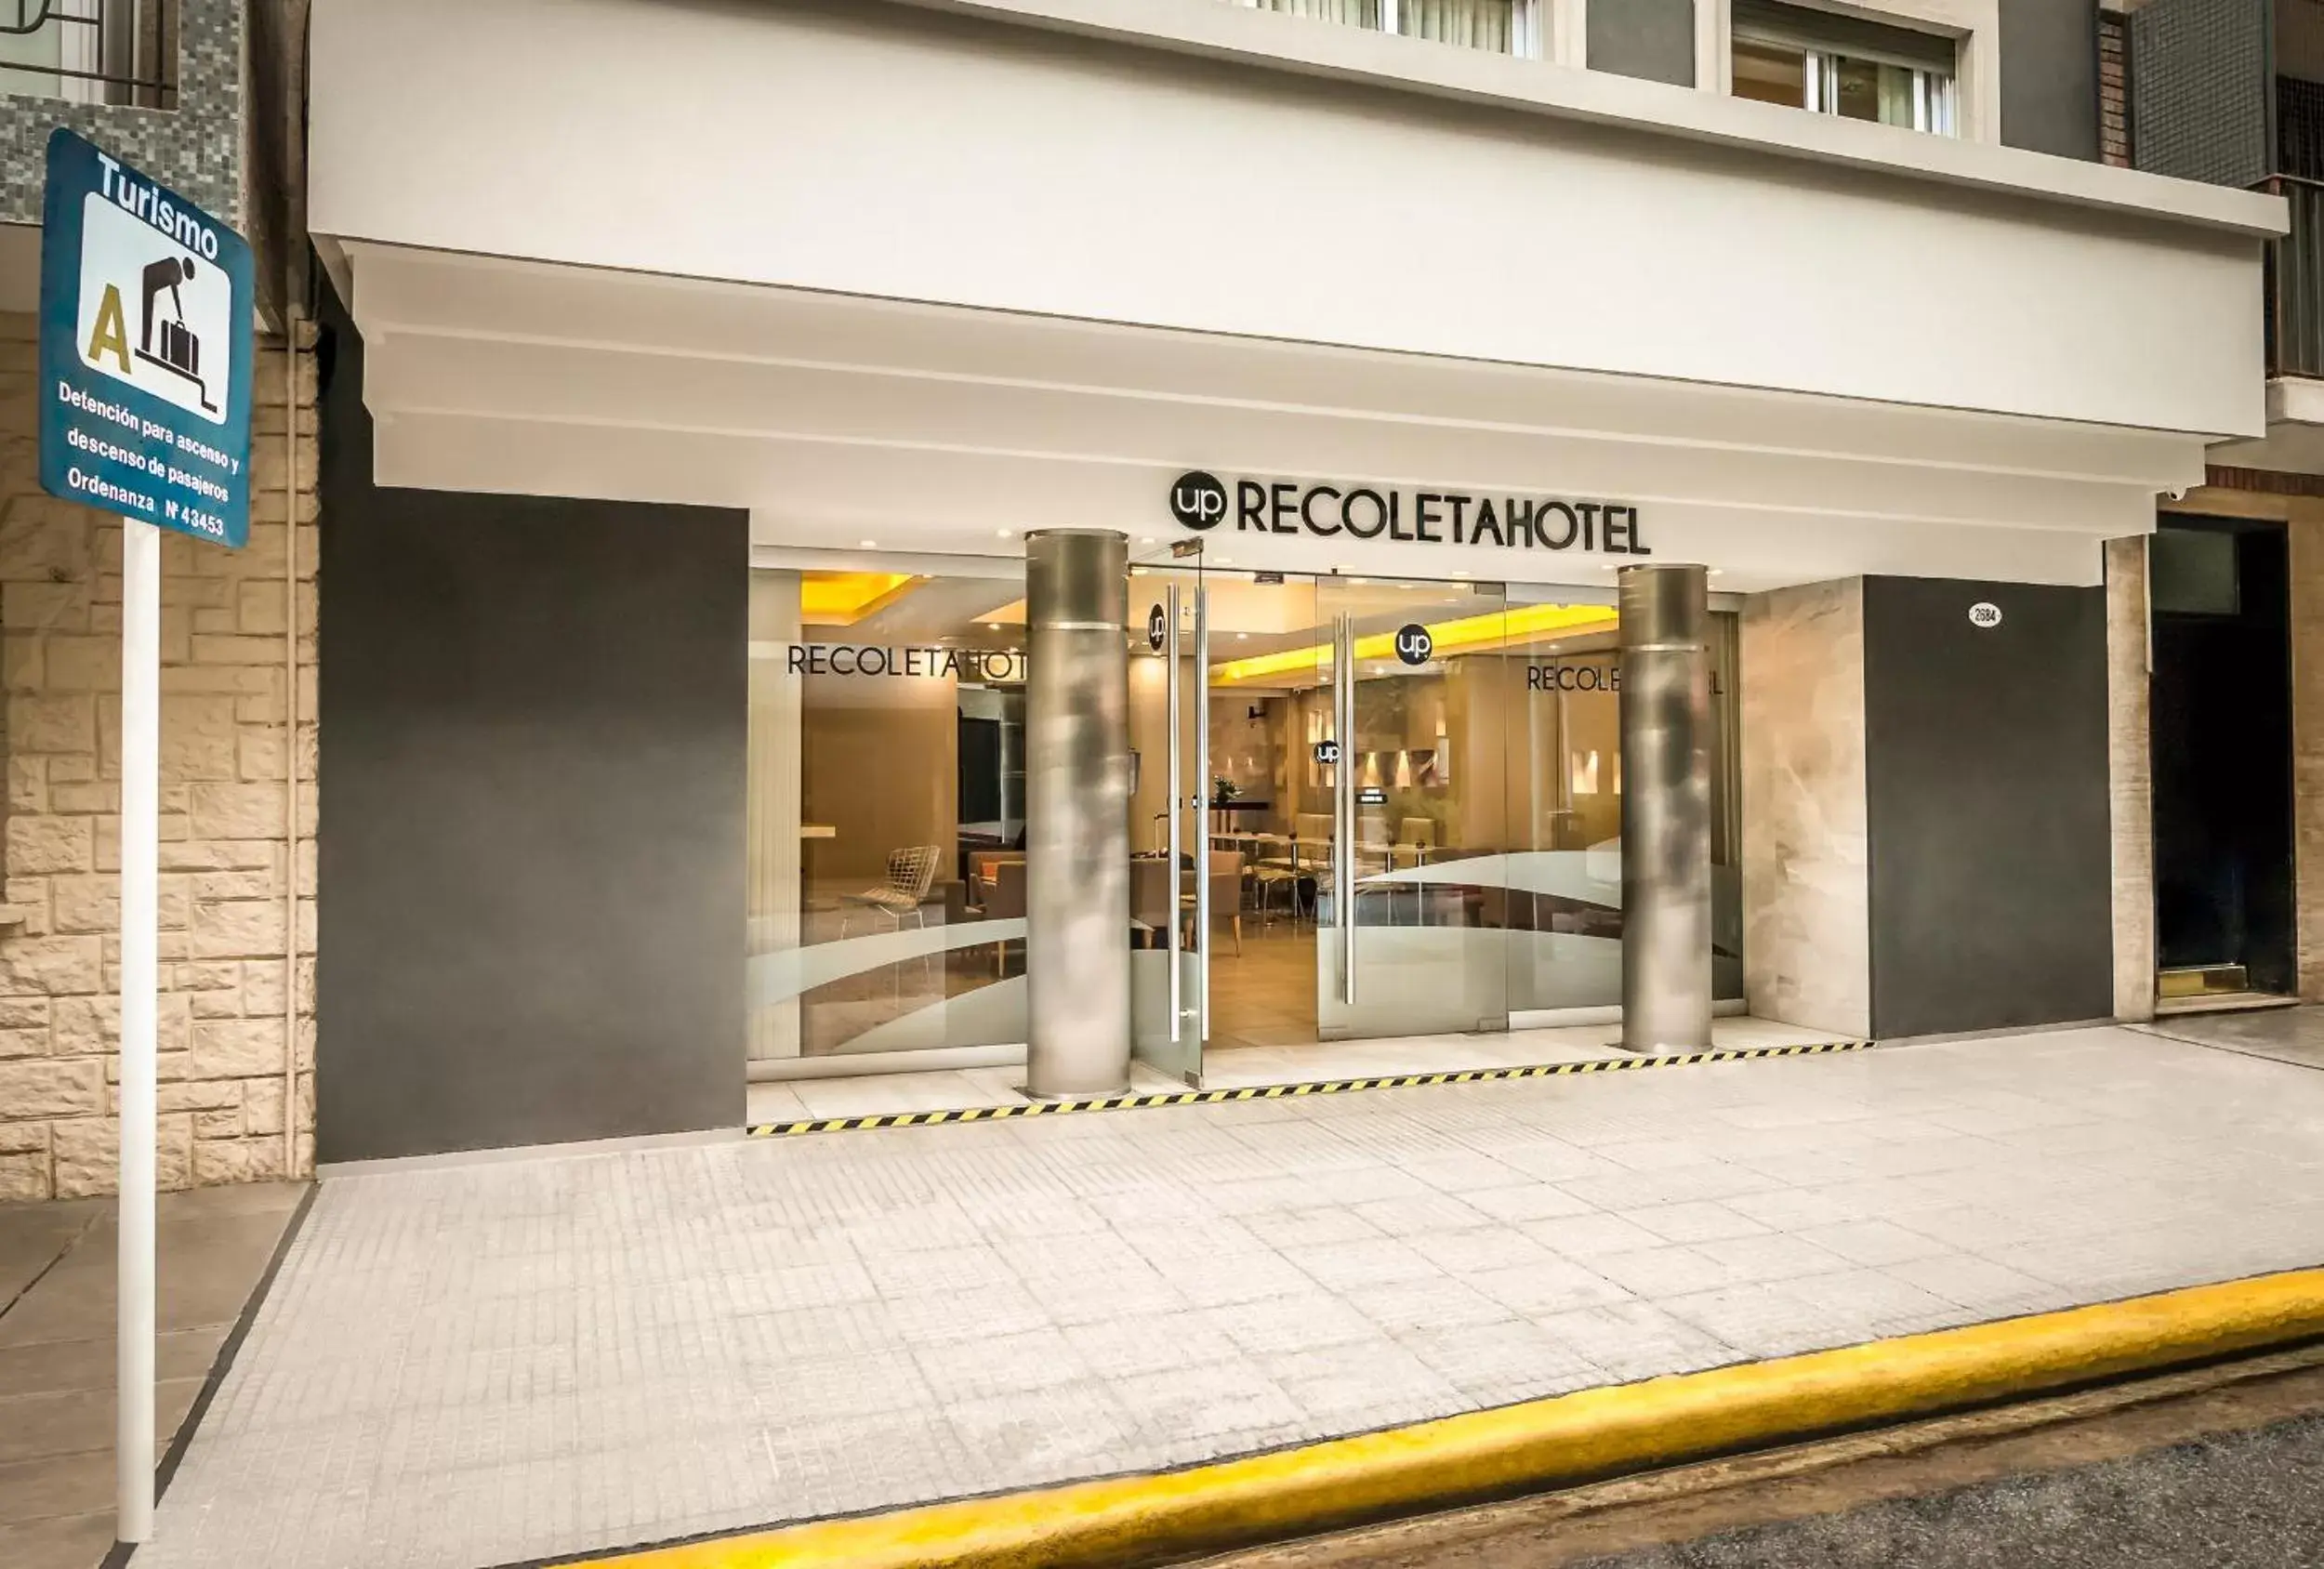 Facade/entrance in Up Recoleta Hotel